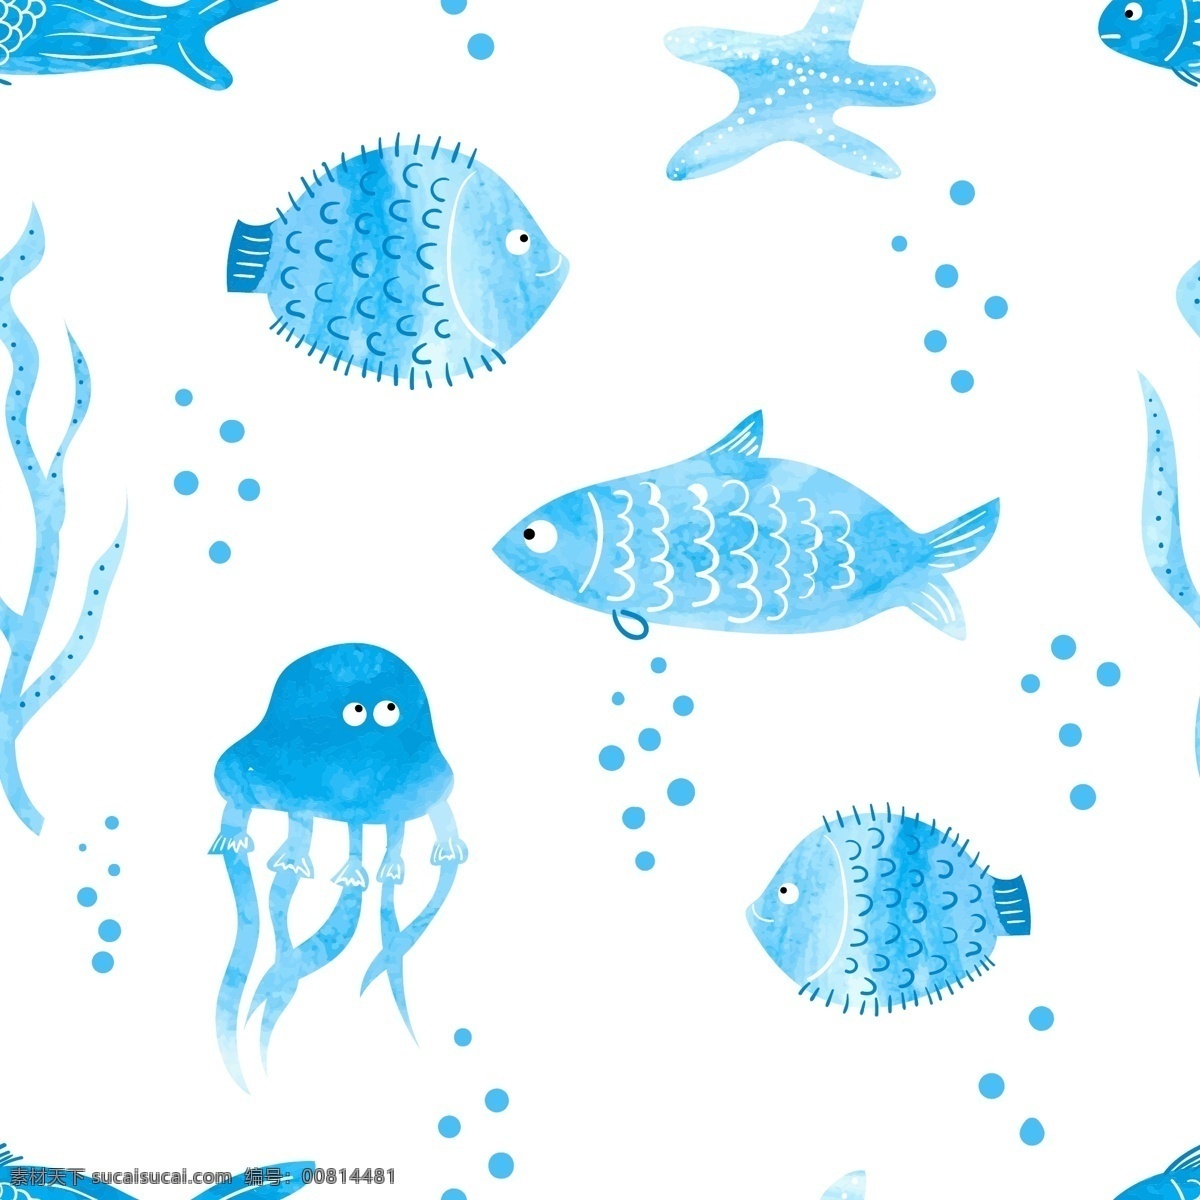 水彩画 海洋 动物 背景 水母 海星 卡通鱼 动物插画 海洋生物 卡通动物 卡通动物漫画 水中生物 生物世界 矢量素材